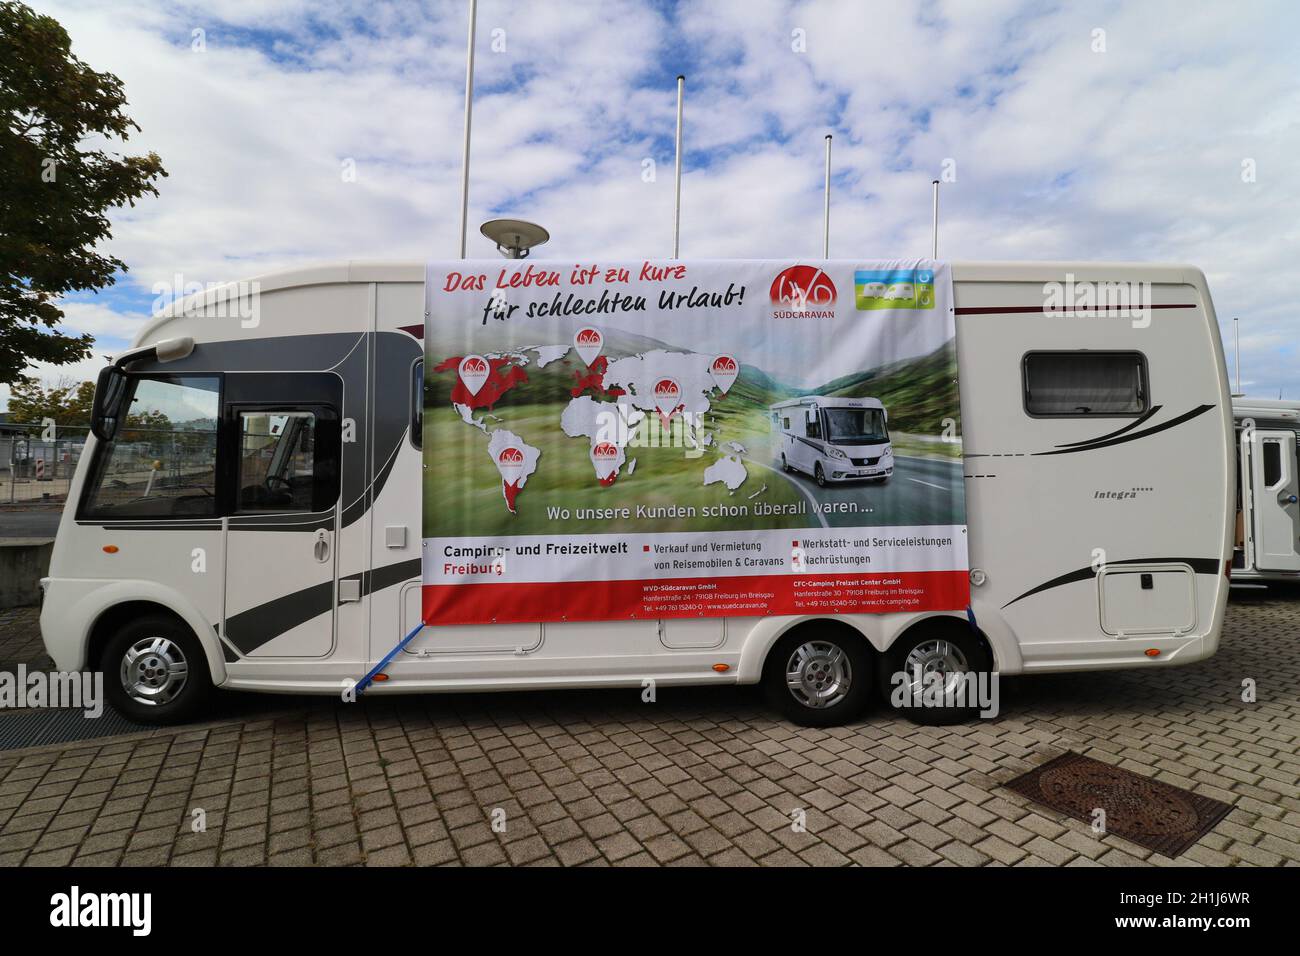 Das Leben ist zu kurz für schlechten Urlaub wirbt ein Wohnmobilhersteller auf der Fachausstellung Caravan live Freiburg 2020 Foto Stock